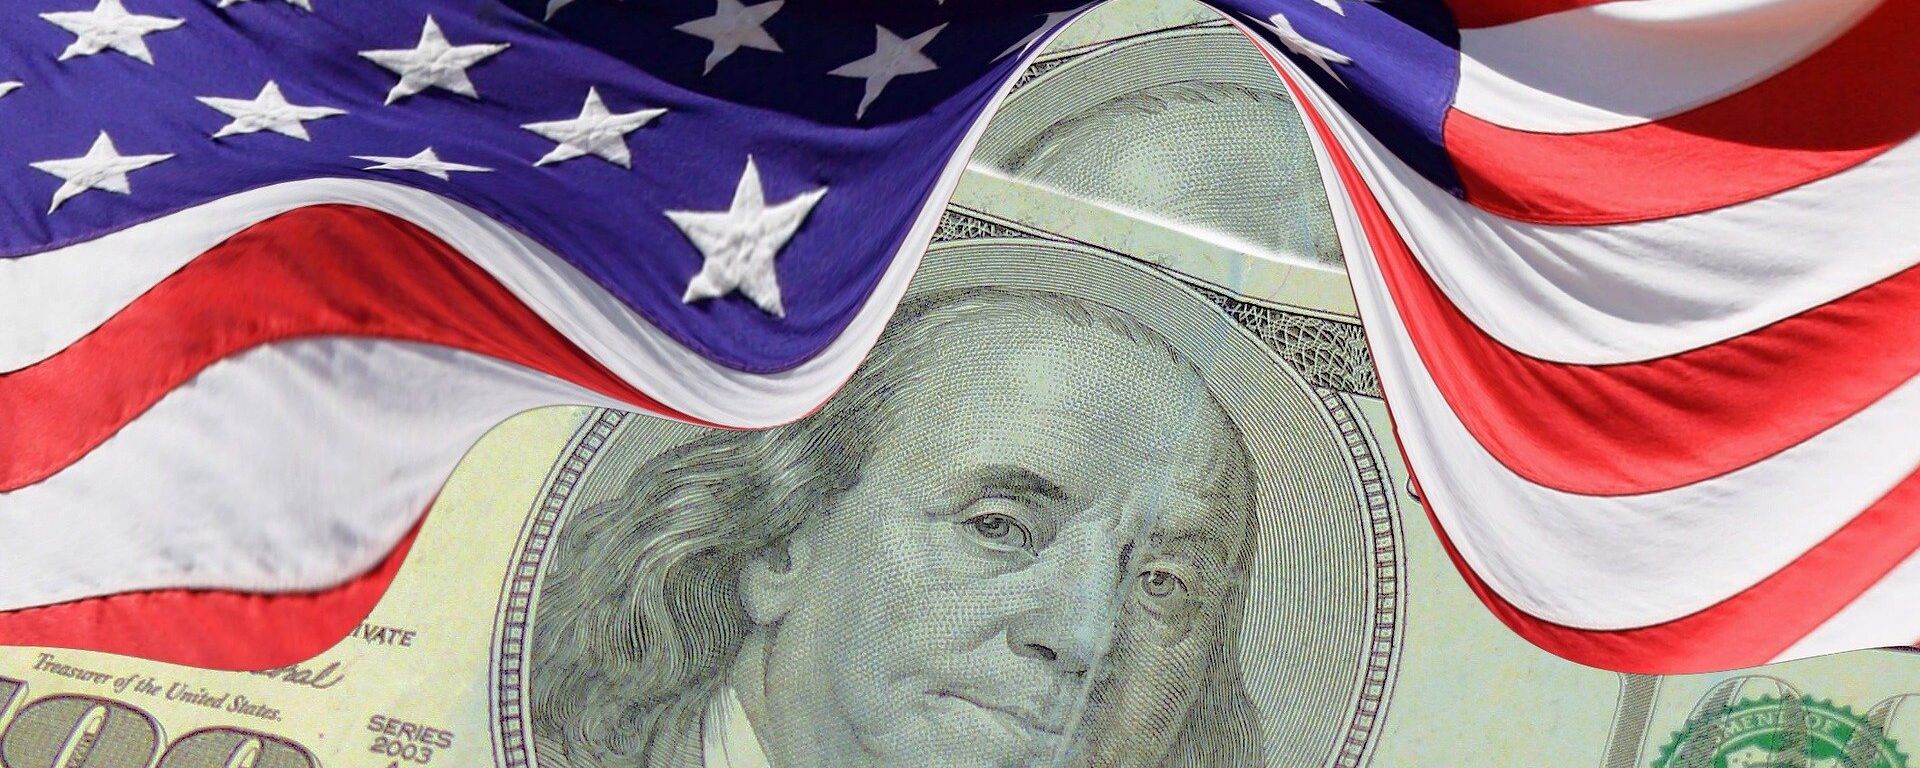 El dólar (moneda de EEUU) y la bandera estadounidense - Sputnik Mundo, 1920, 02.08.2021